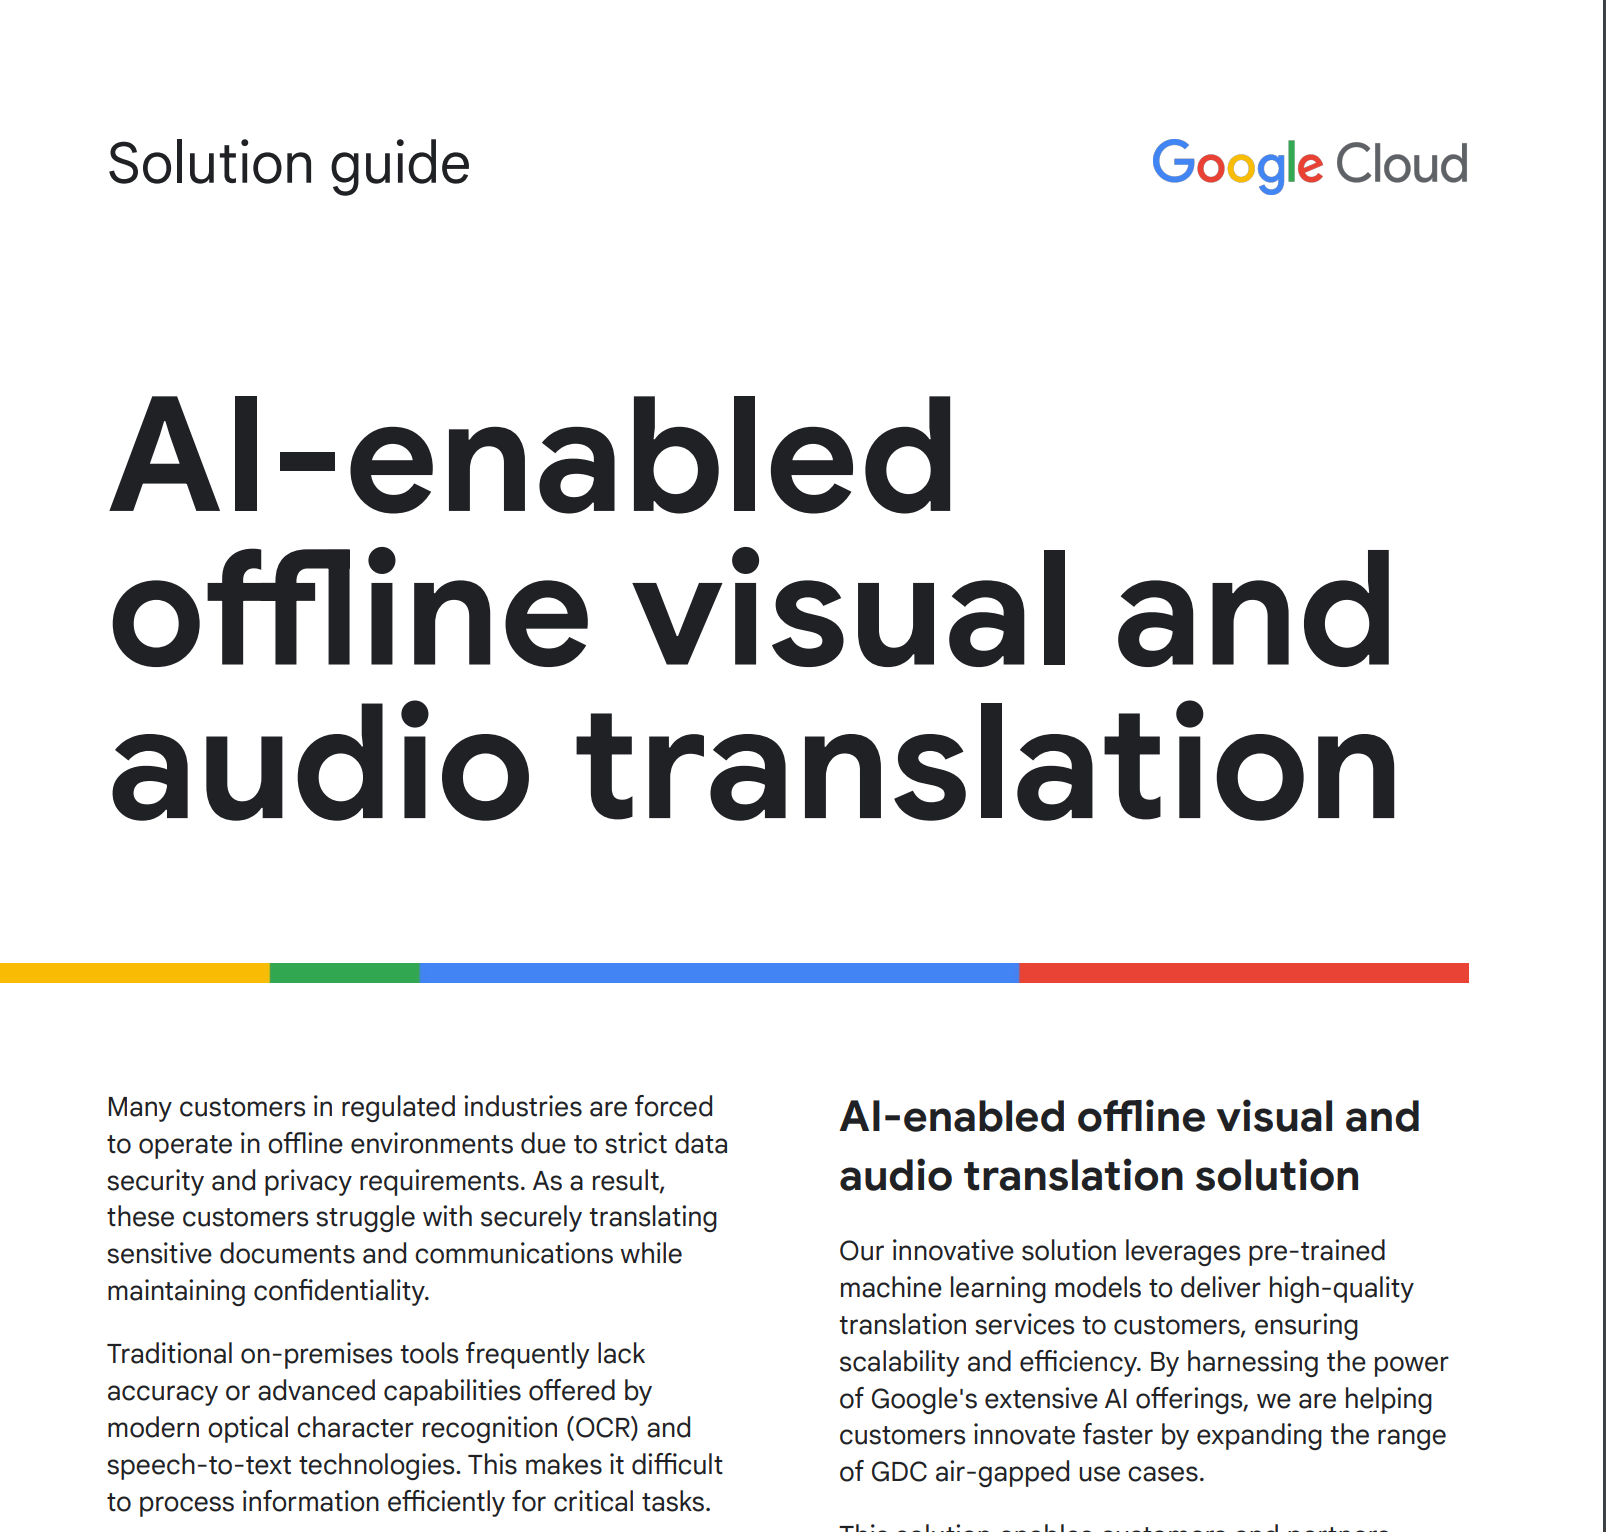 Guida alle soluzioni per la traduzione di audio e immagini offline con l'AI integrata